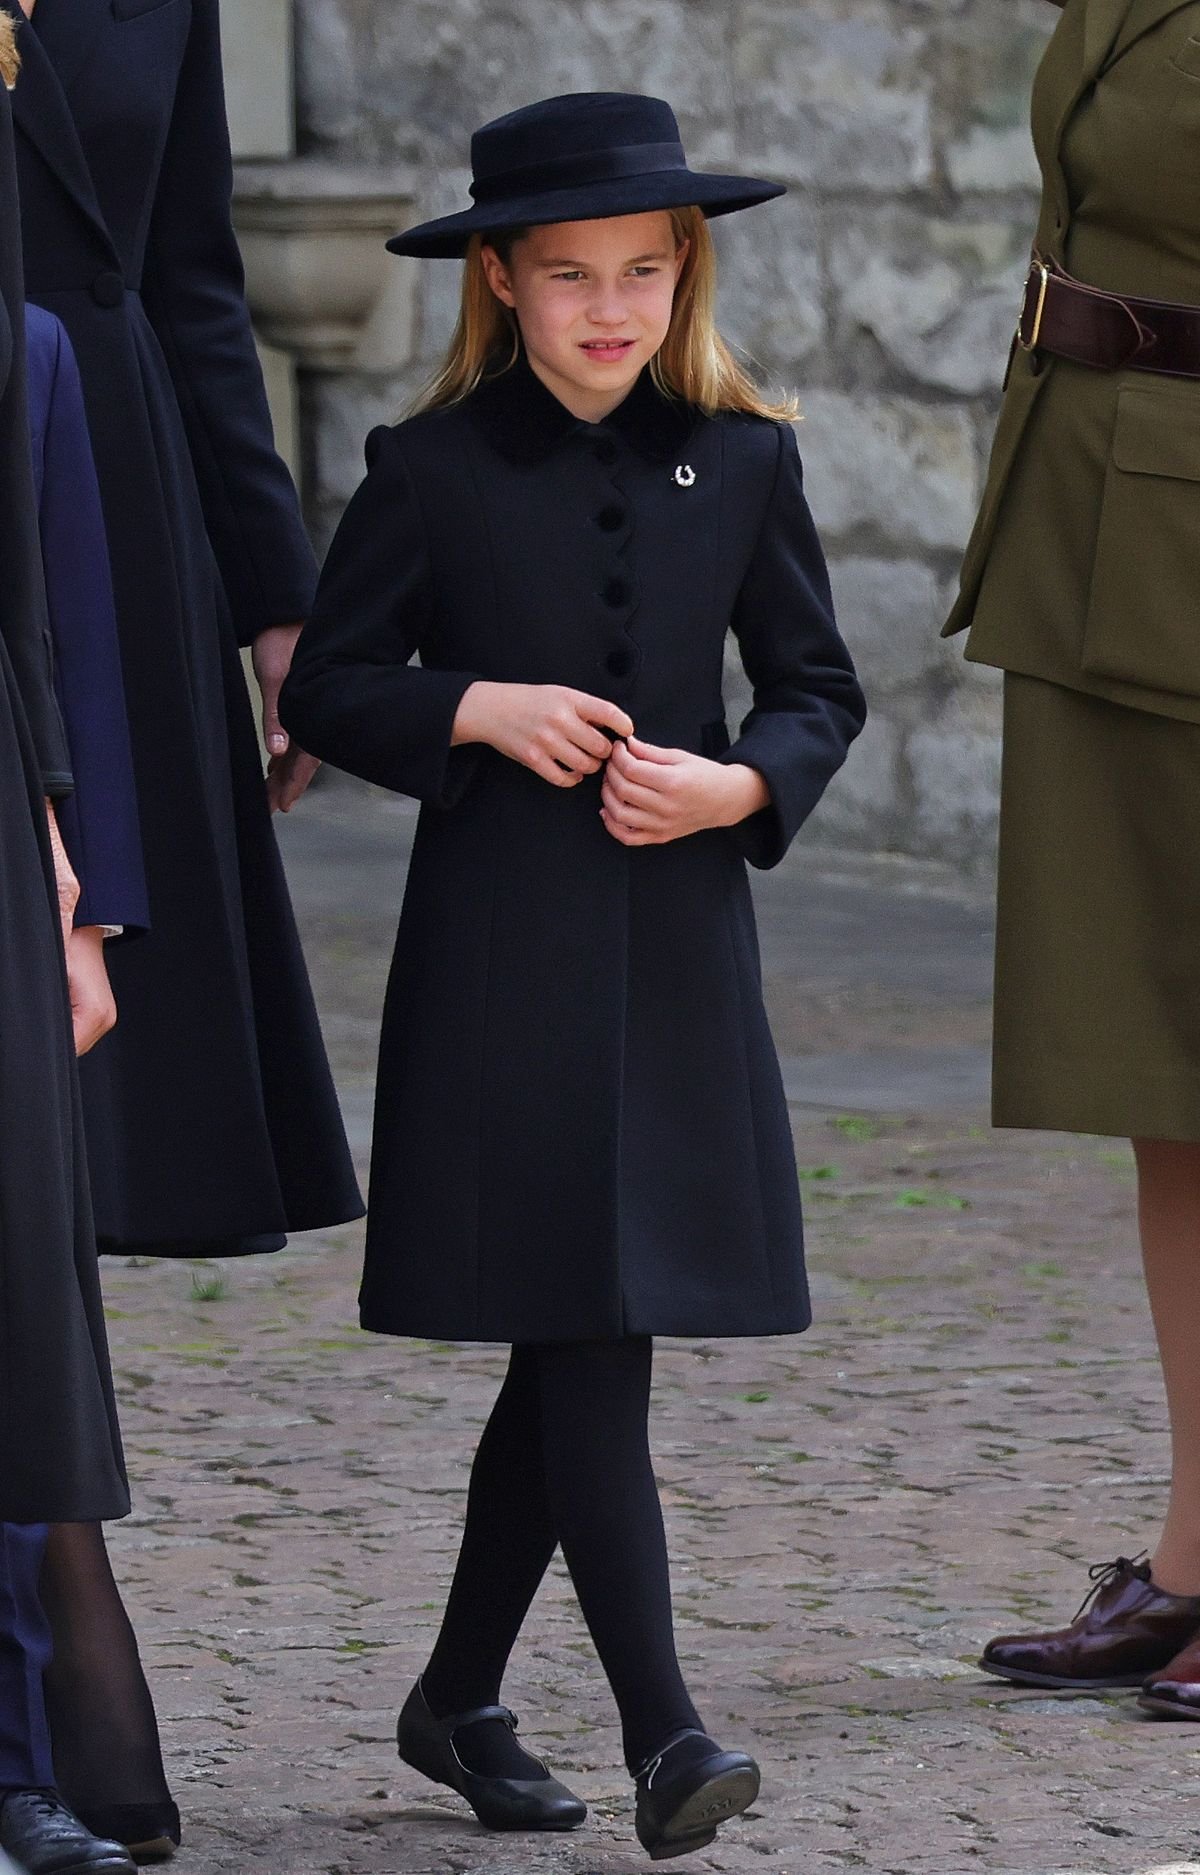 الأميرة شارلوت في مراسم جنازة الملكة اليزابيث